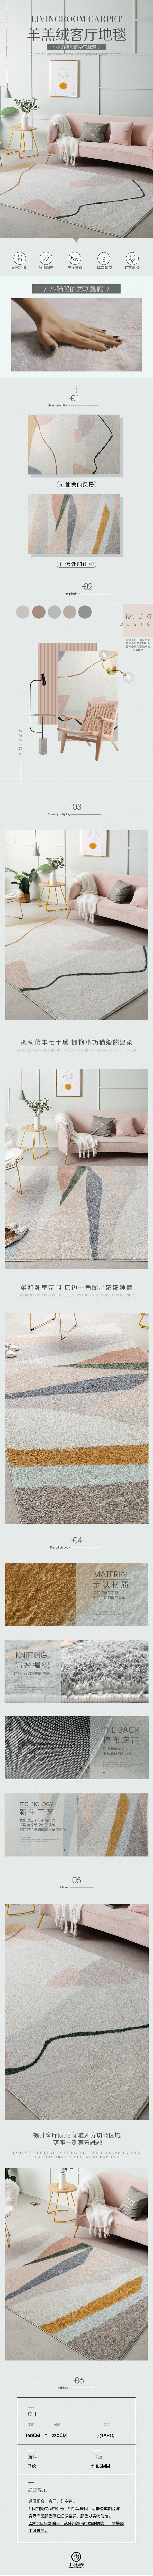 淘宝美工阿雅现代简约舒适环保柔和亲肤地毯作品